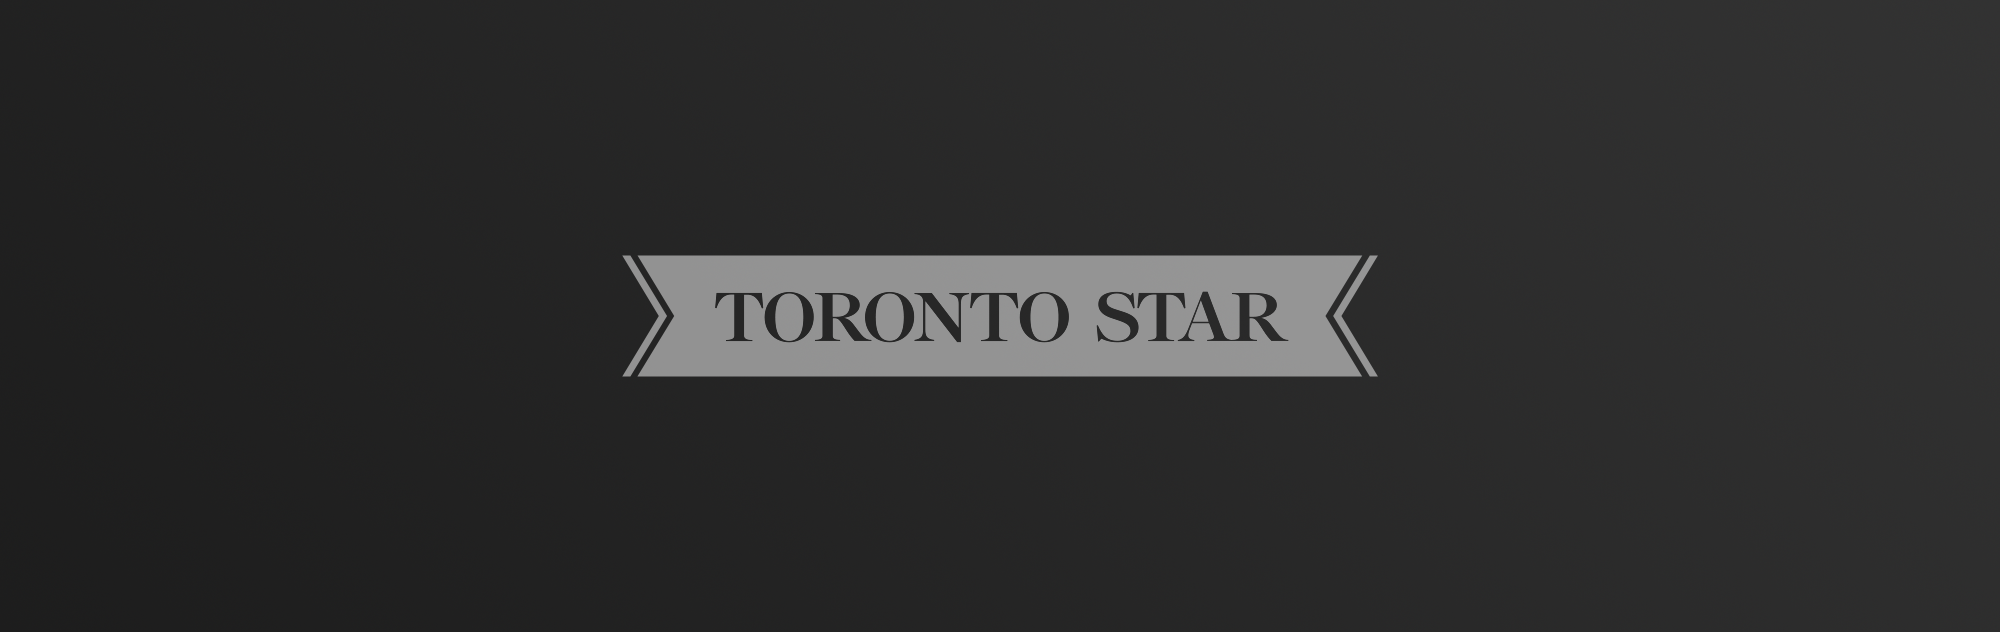 Toronto Star logo on dark gradient background